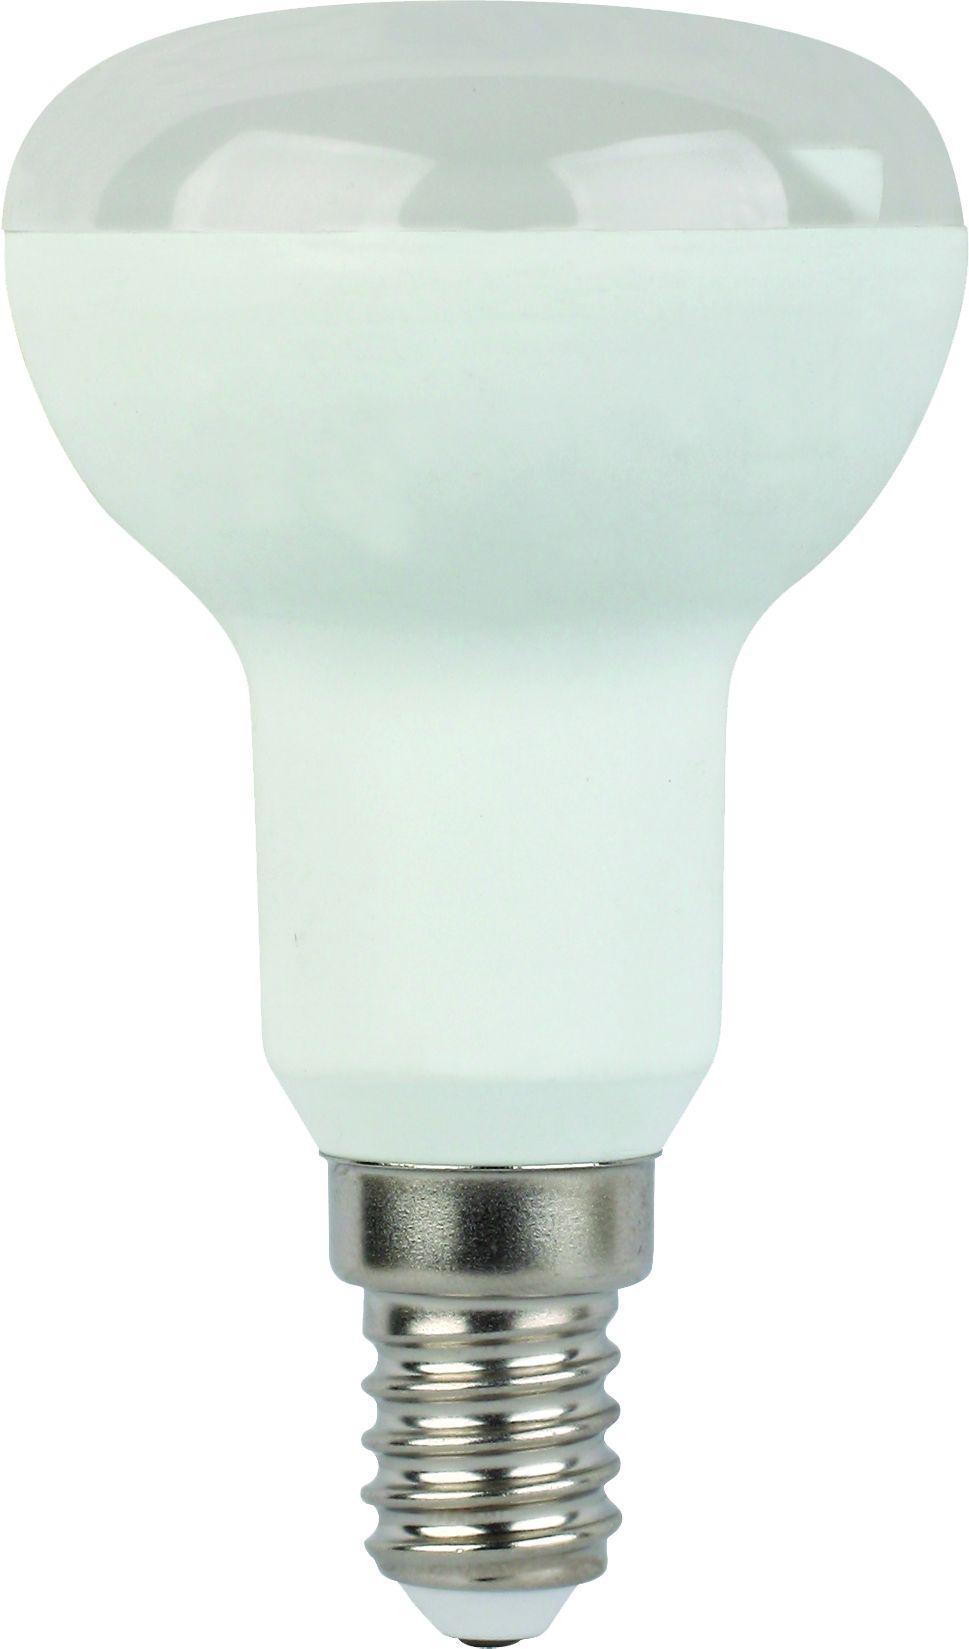 90121155 Лампа стандарт светодионая E14 5.40 Вт рефлекторная 430 Лм нейтральный свет STLM-0112354 ECOLA